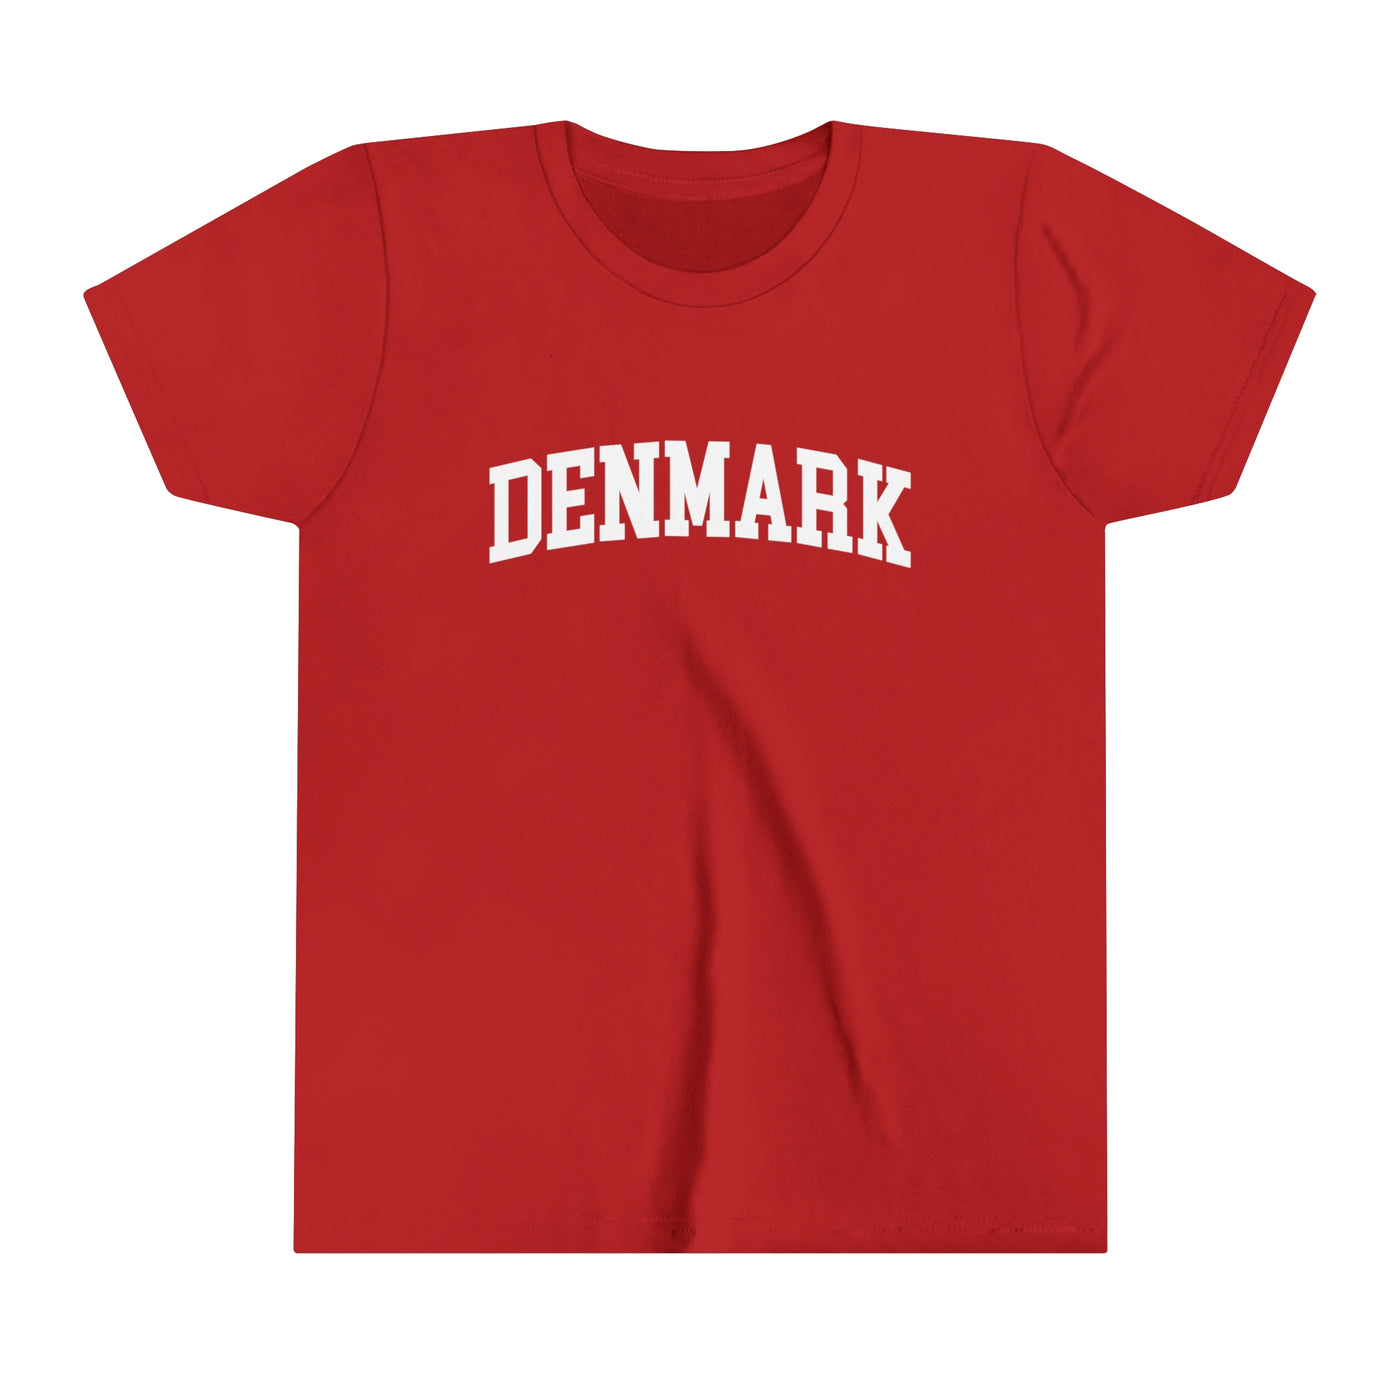 Denmark University Kids T-Shirt